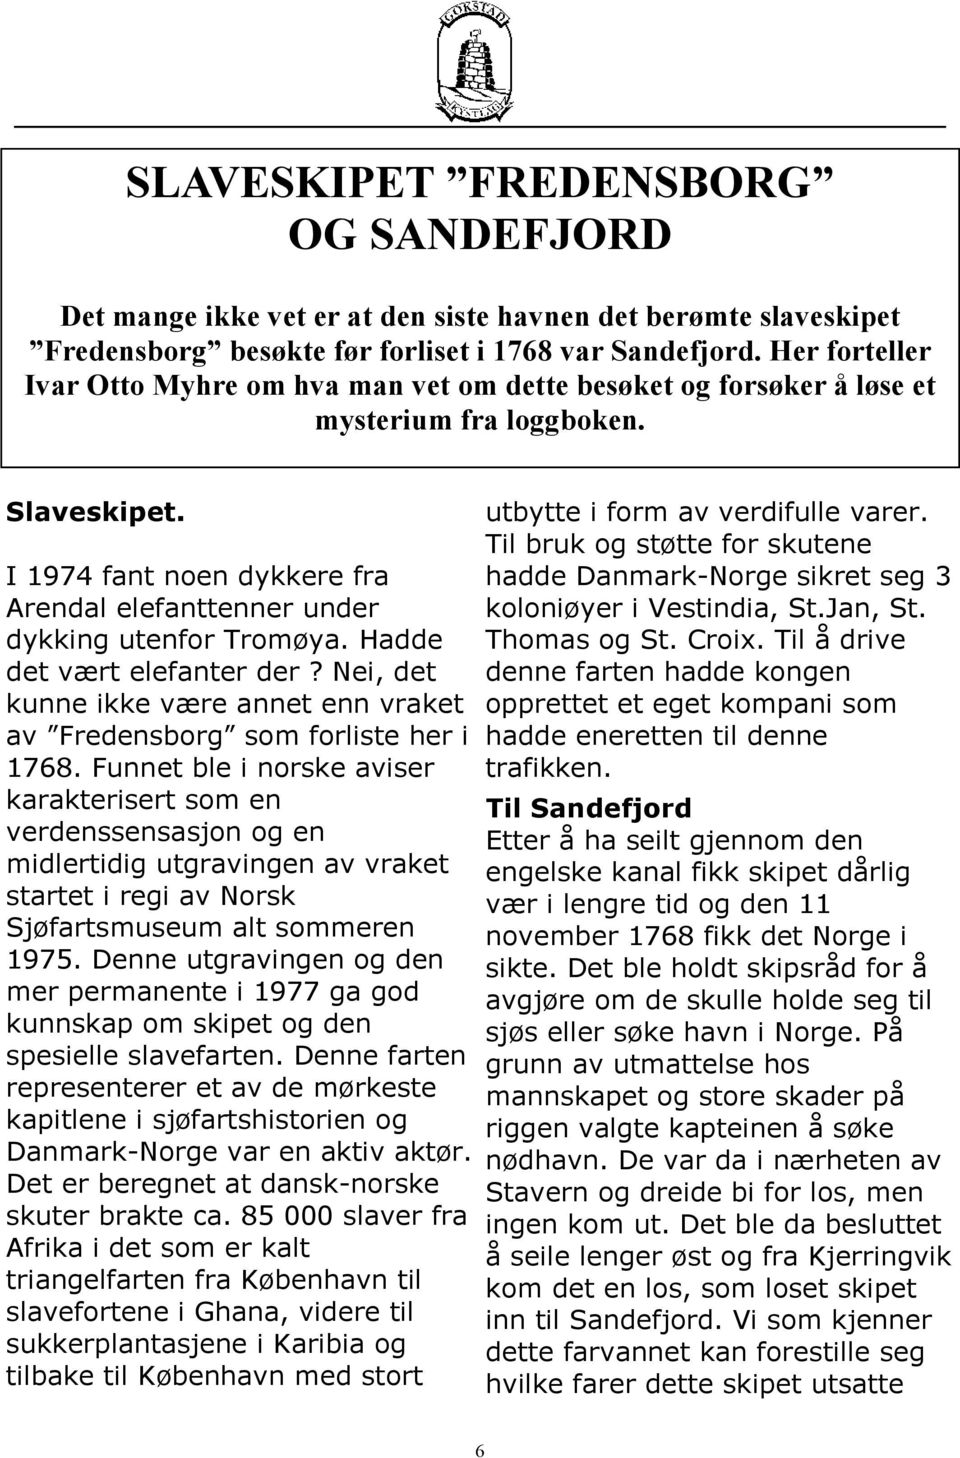 I 1974 fant noen dykkere fra Arendal elefanttenner under dykking utenfor Tromøya. Hadde det vært elefanter der? Nei, det kunne ikke være annet enn vraket av Fredensborg som forliste her i 1768.